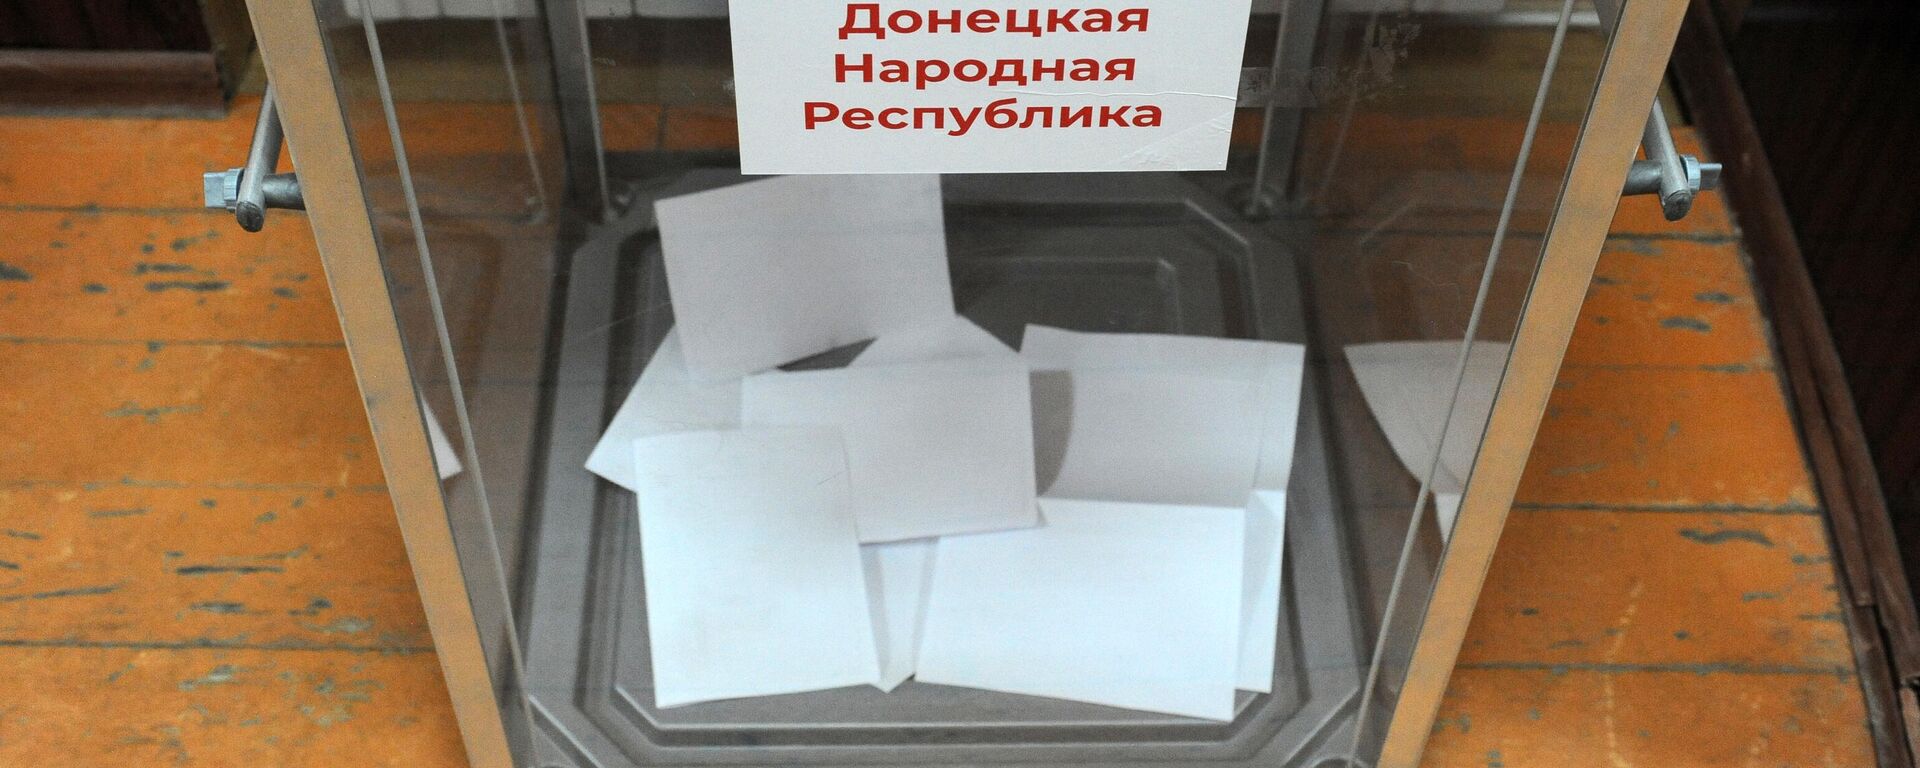 Urna de votación en el referendo unionista en Donetsk - Sputnik Mundo, 1920, 25.09.2022